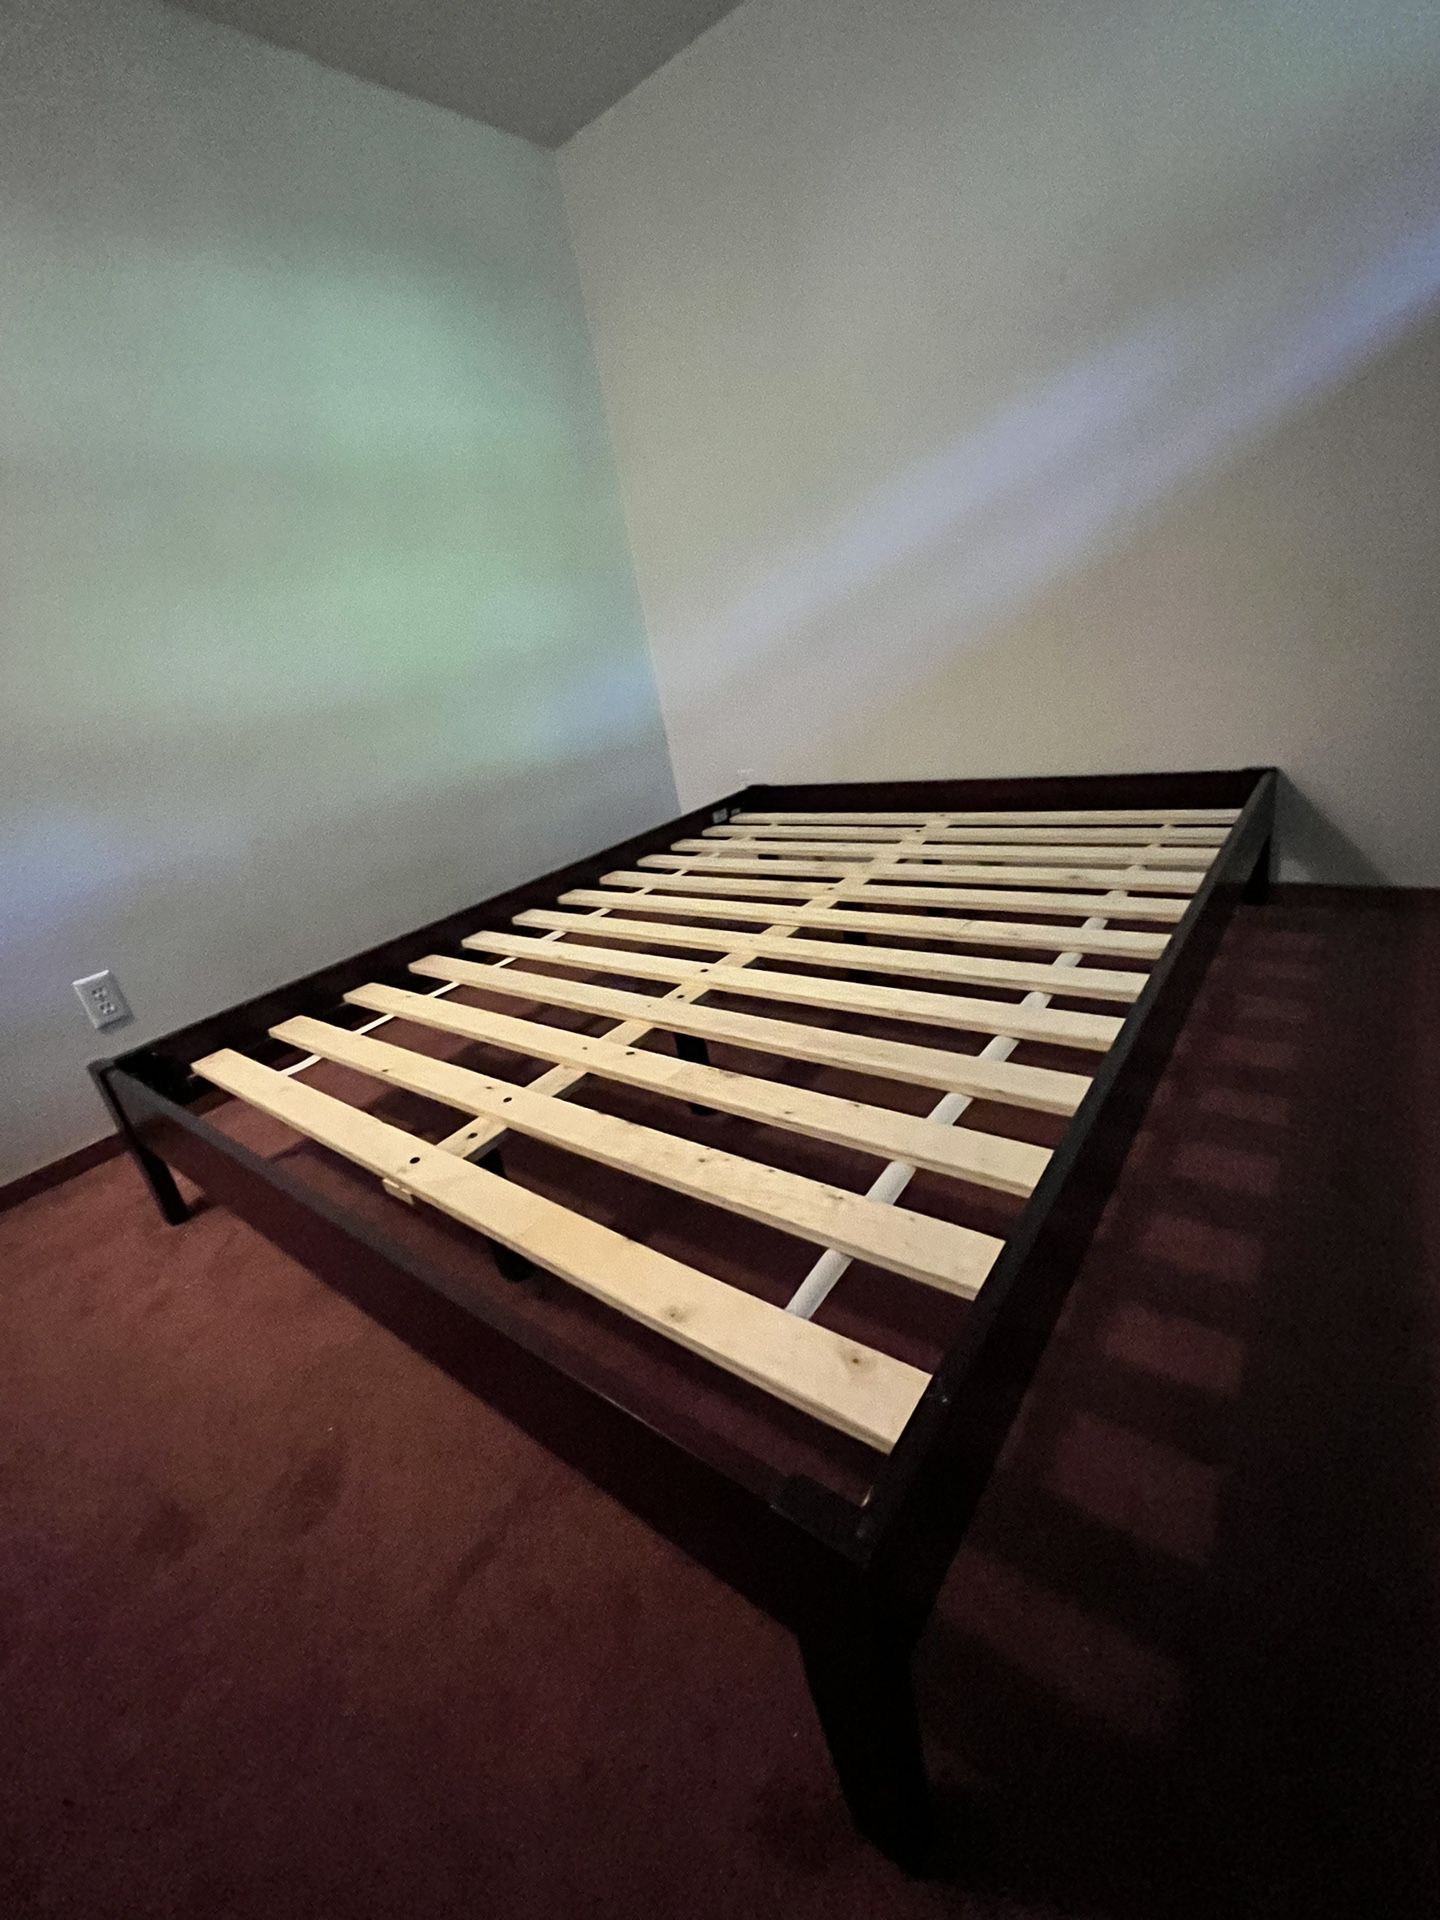 platform queen bed mattress frame.